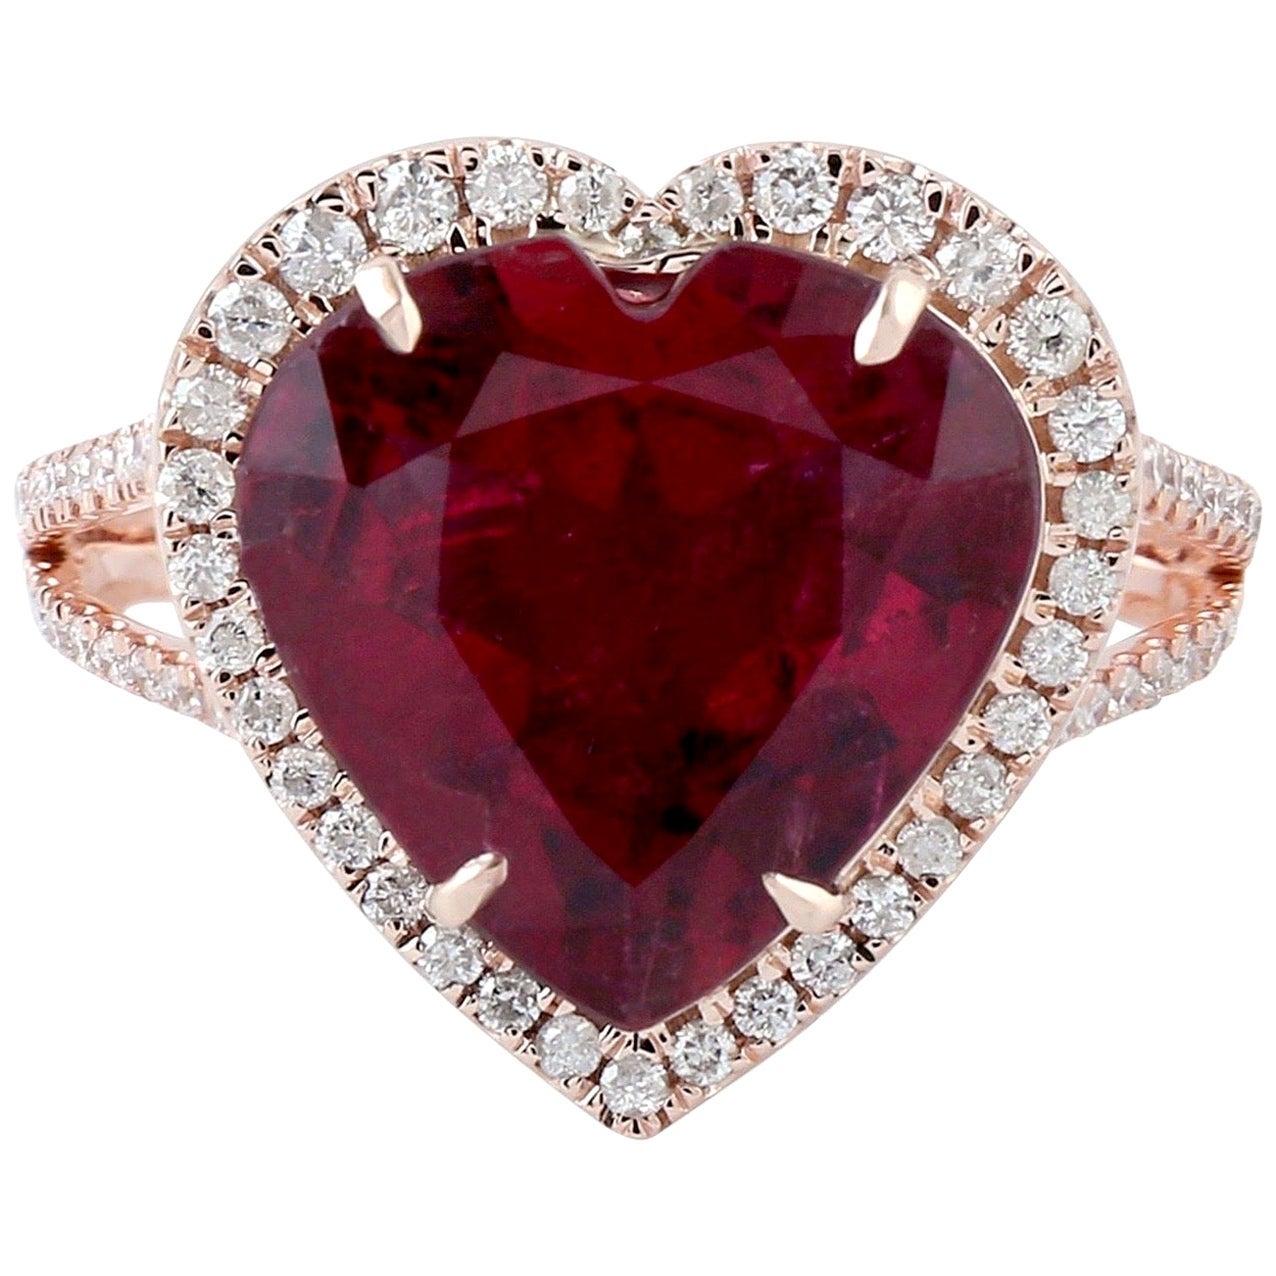 For Sale:  5.3 Carat Rubellite Diamond 18 Karat Gold Heart Ring